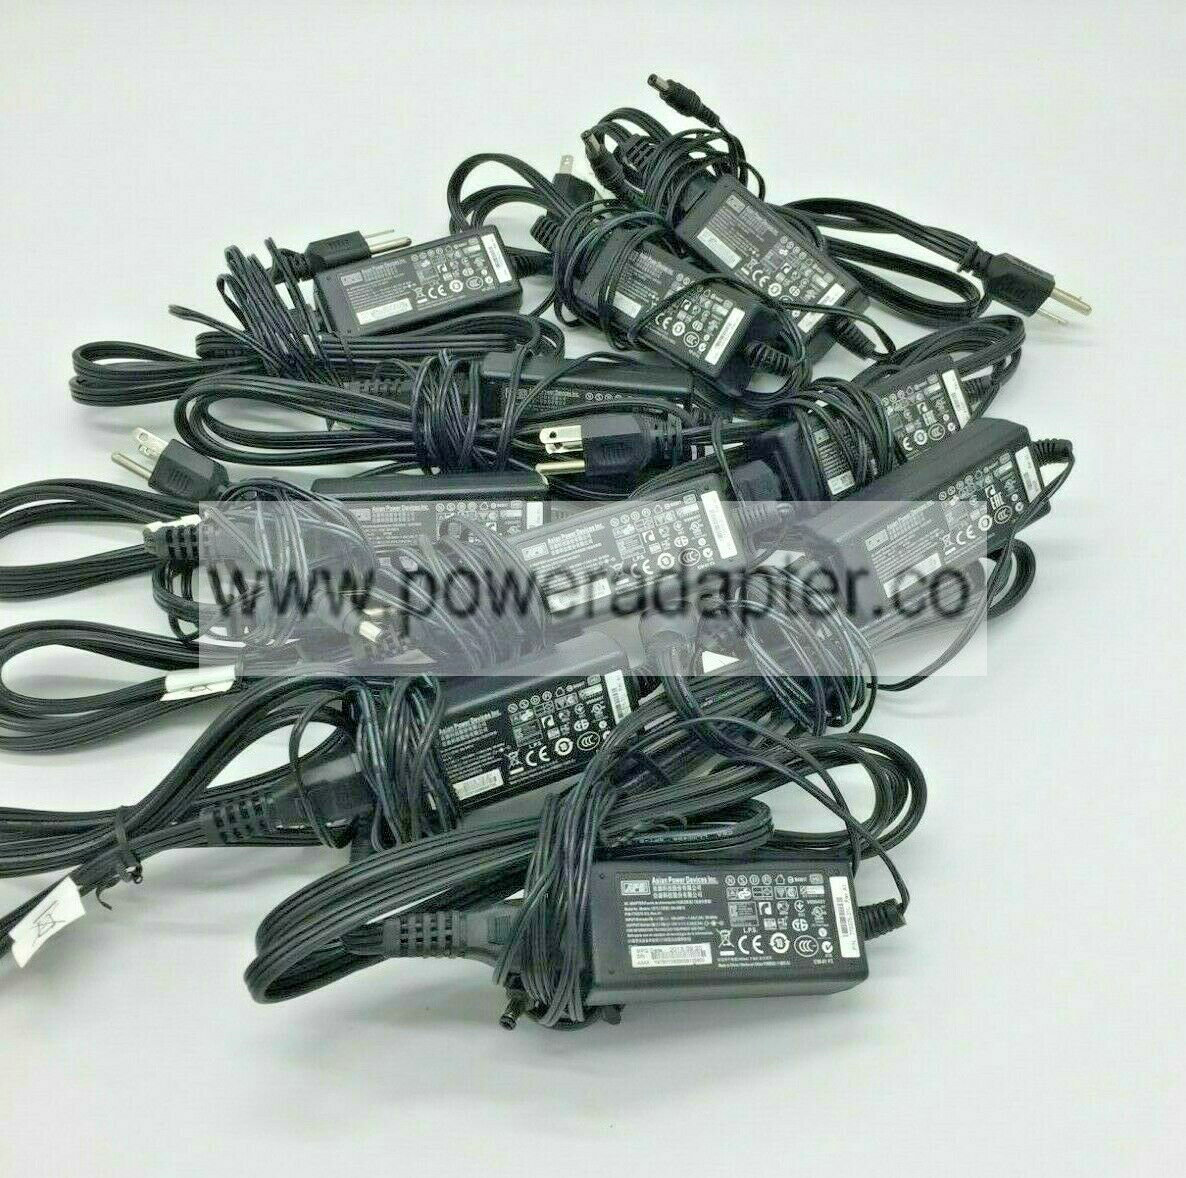 lot of 10 WYSE APD AC Adapter DA-30E12 770375-31L 12V 2.5A 9y62f charger power lot of 10 WYSE APD AC Adapter DA- - Click Image to Close